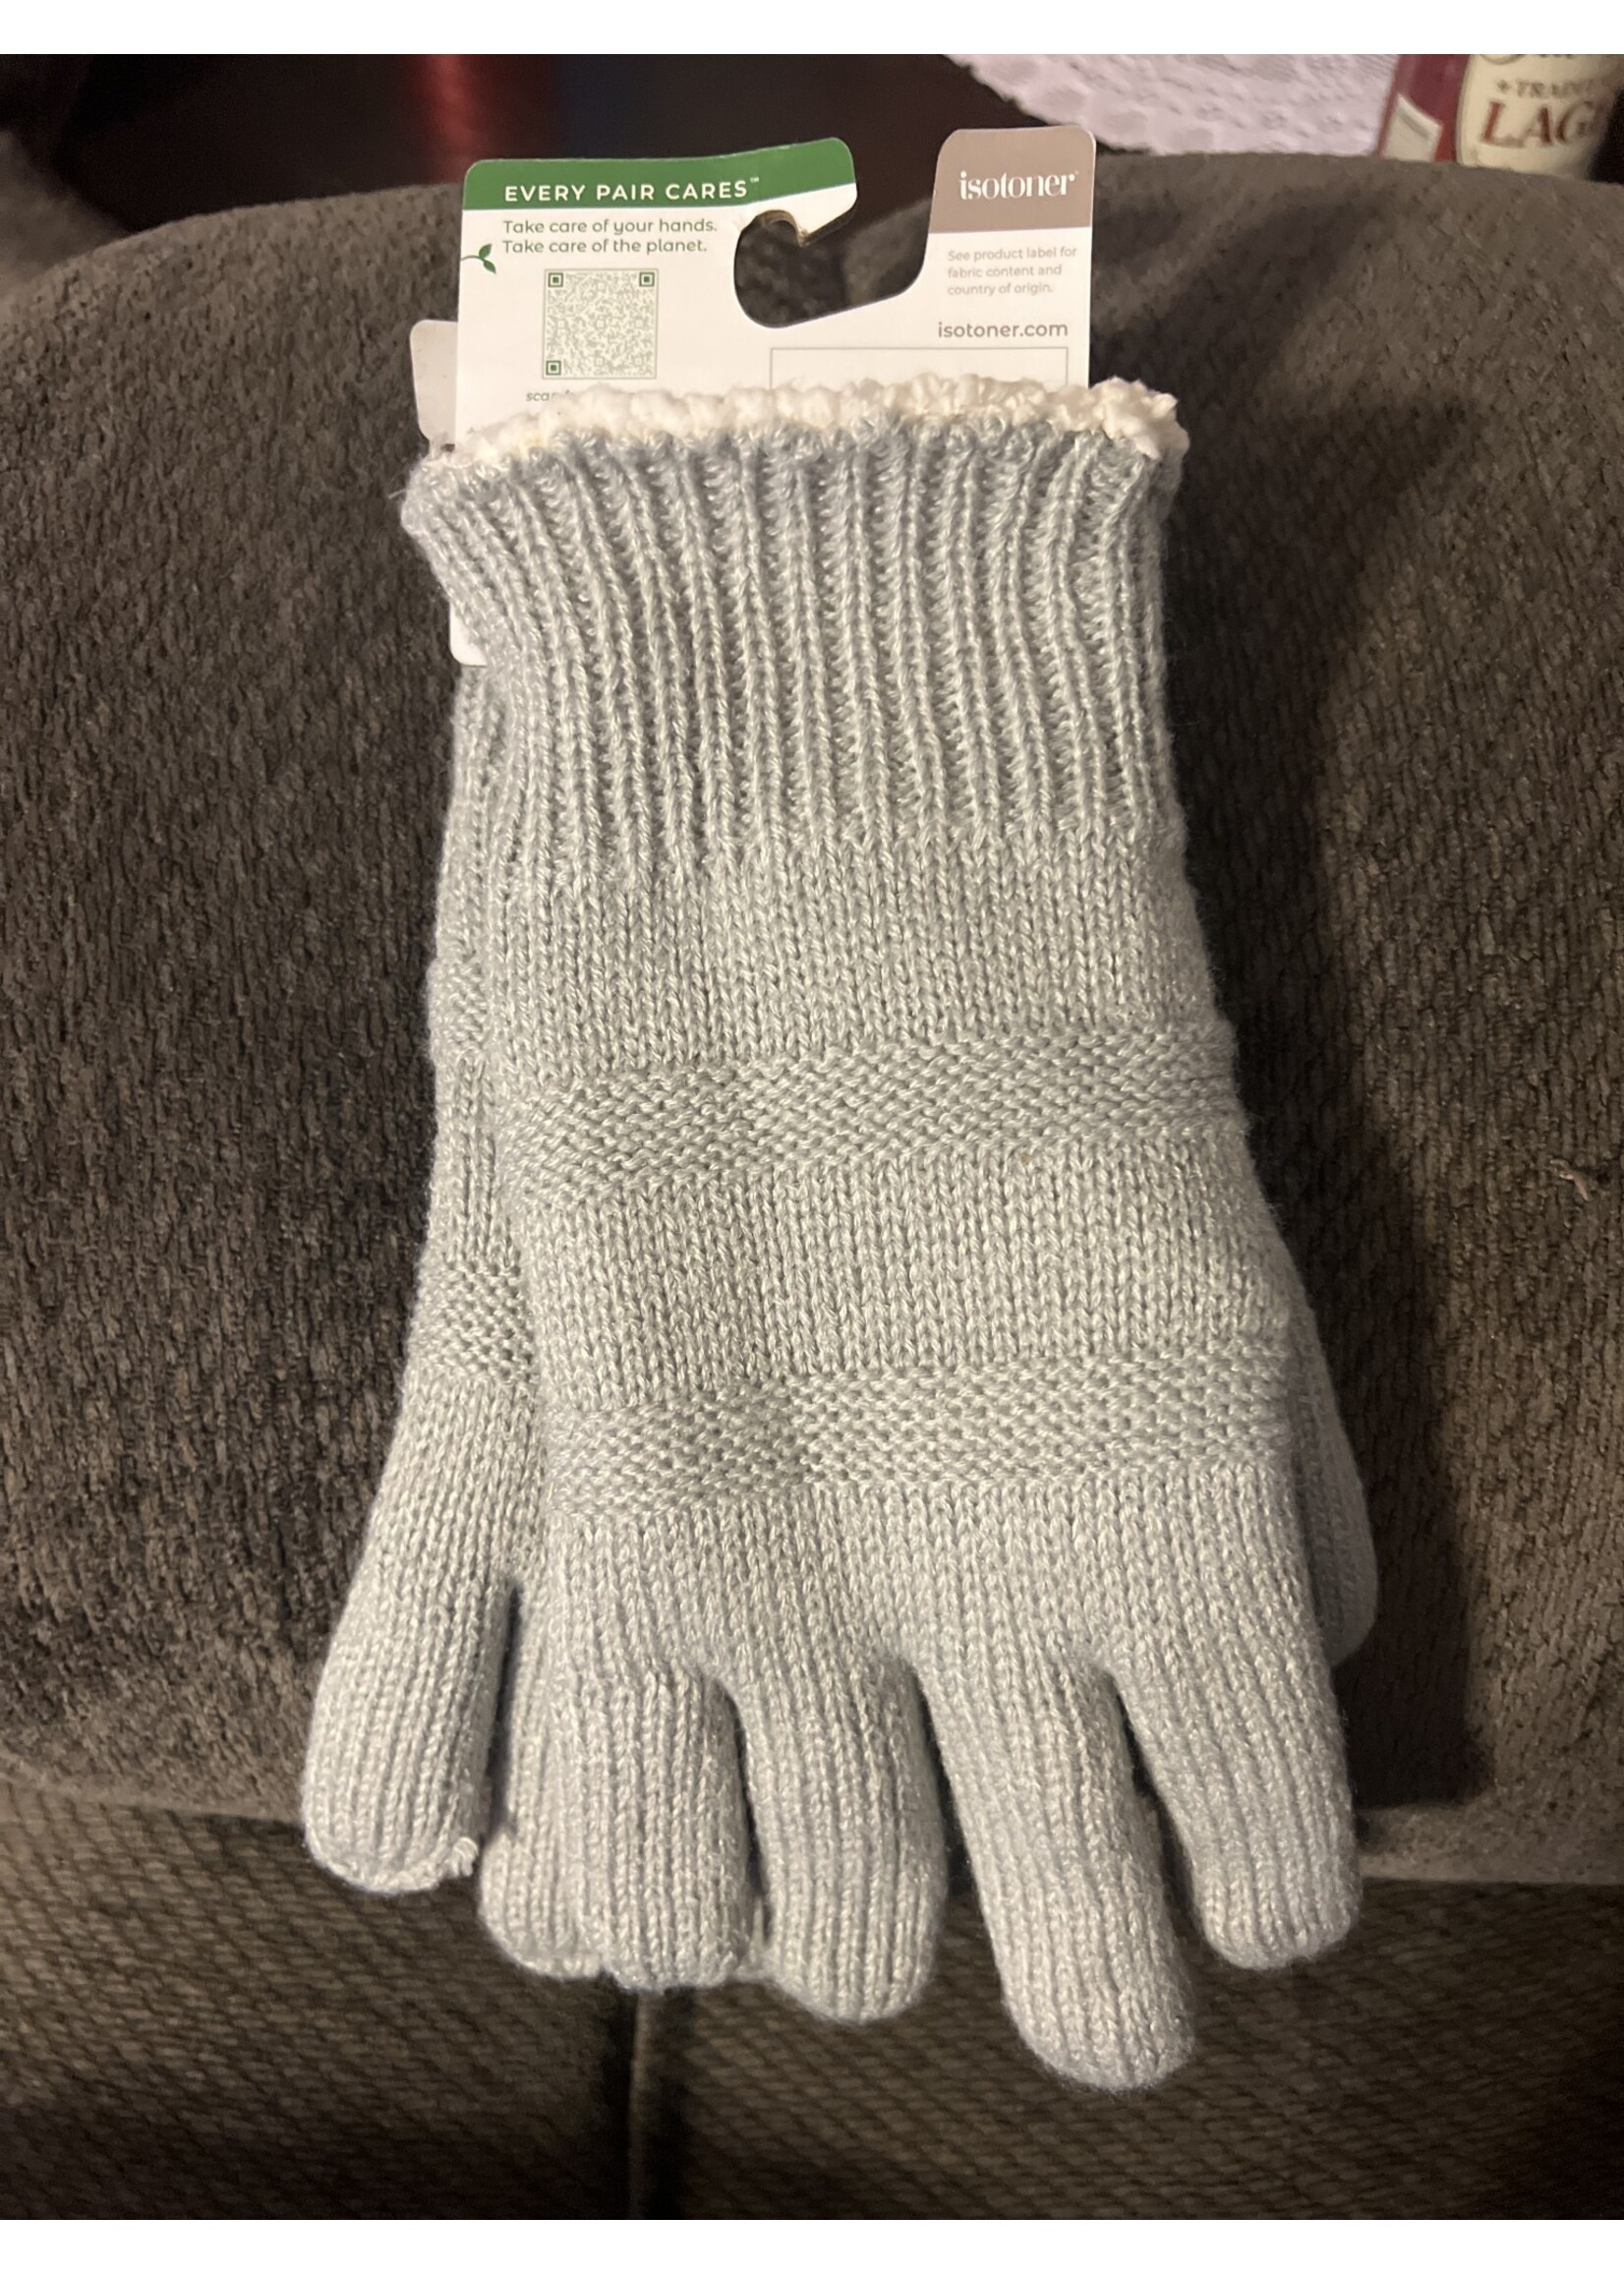 Isotoner Adult Women’s Smartdri Knit Gloves - Light Gray